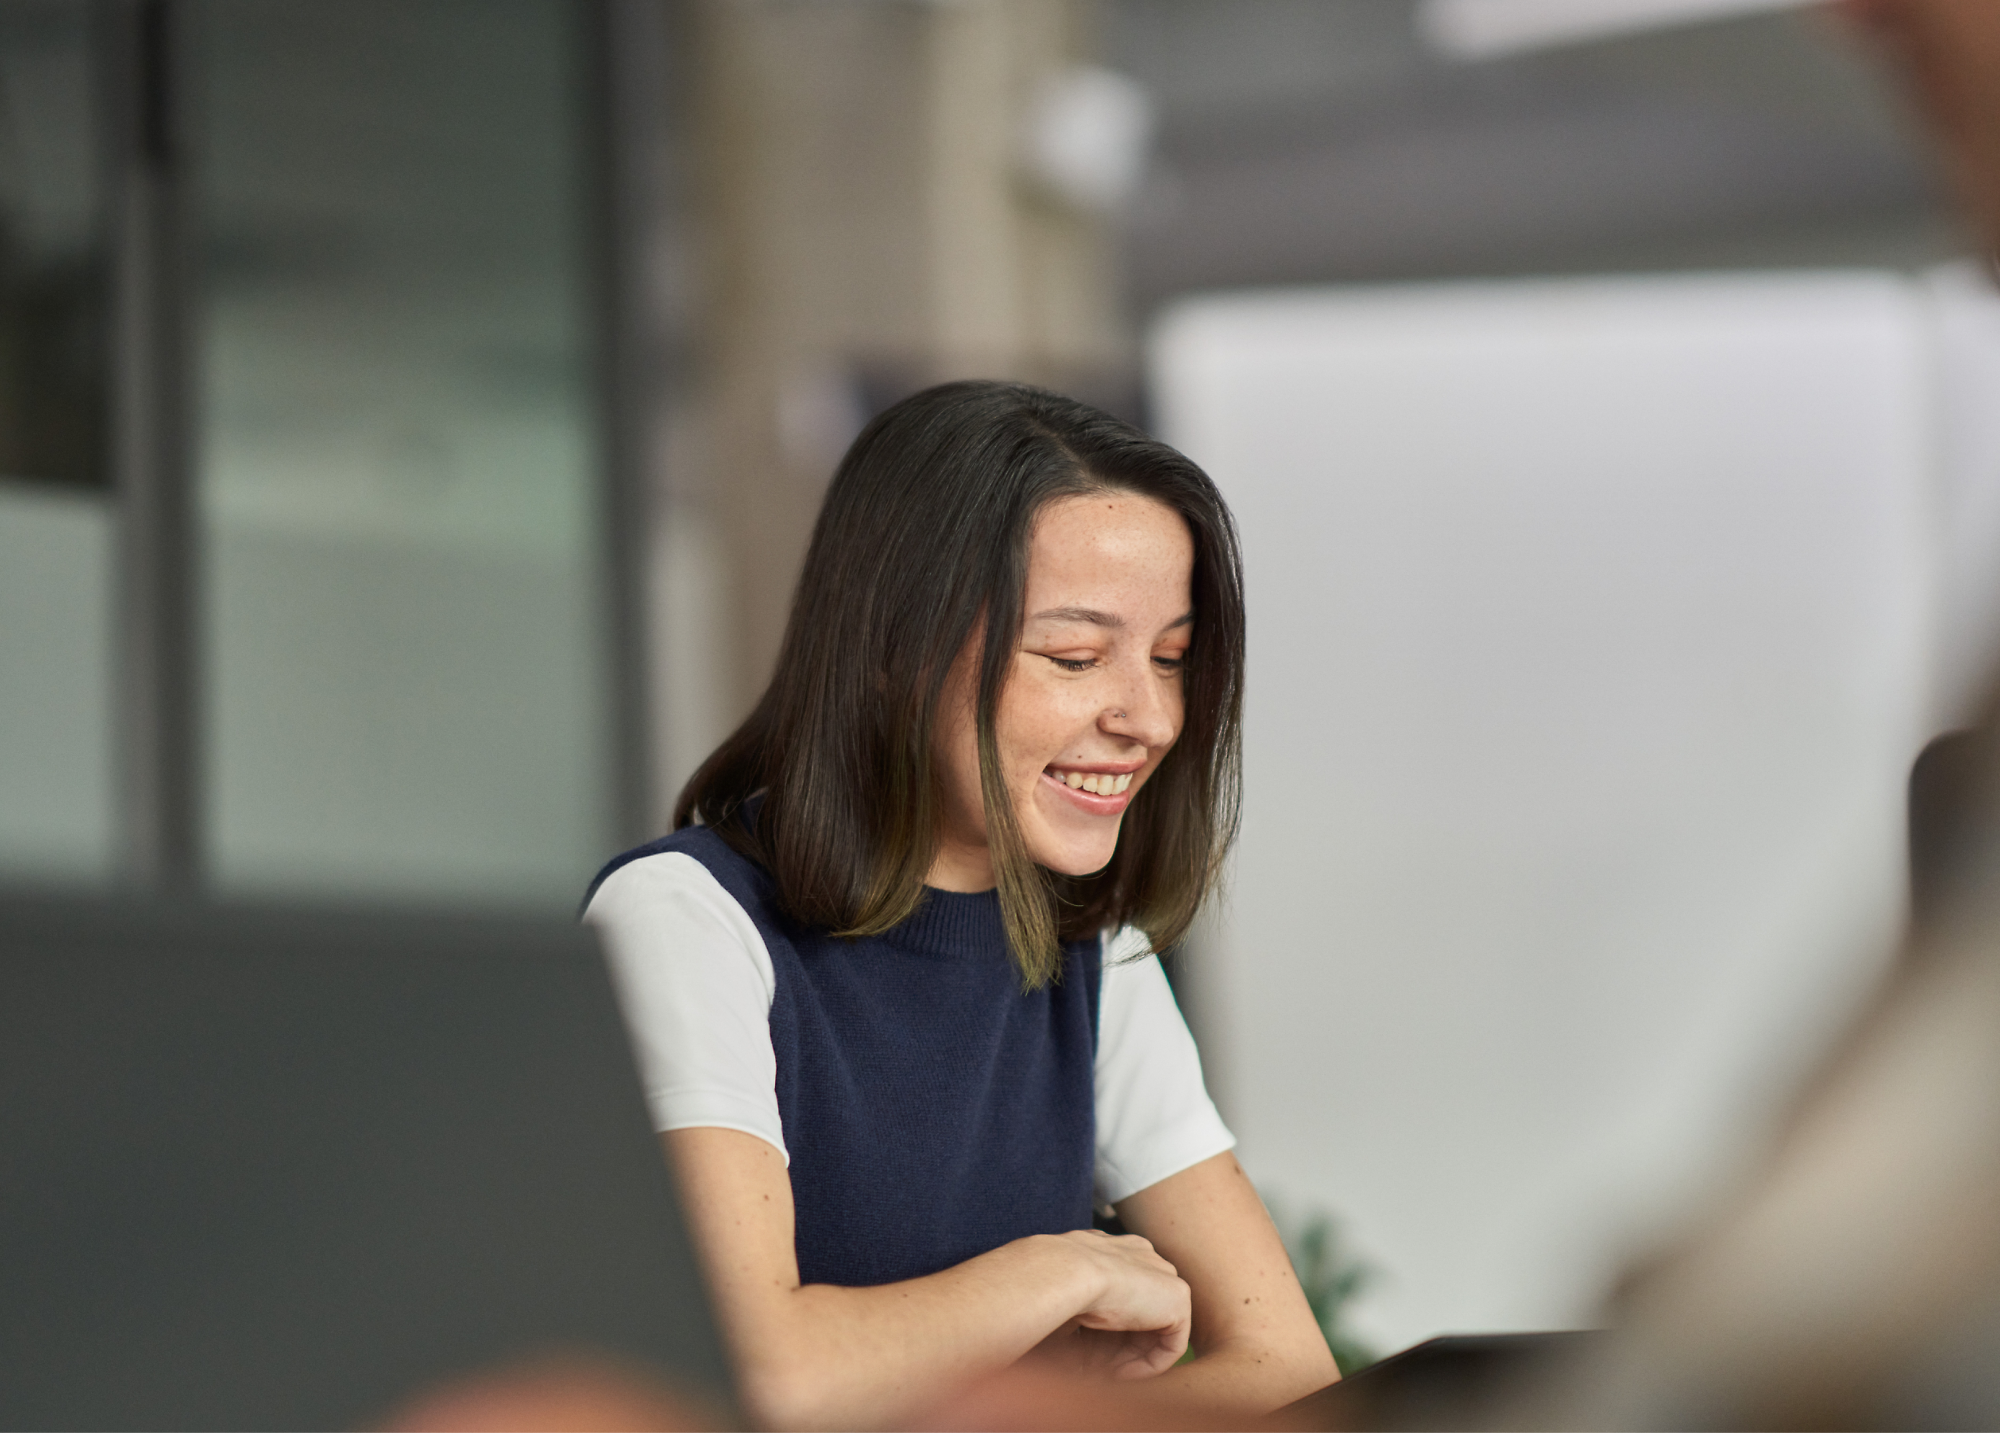 Žena sa usmieva počas schôdze v kancelárskom prostredí.